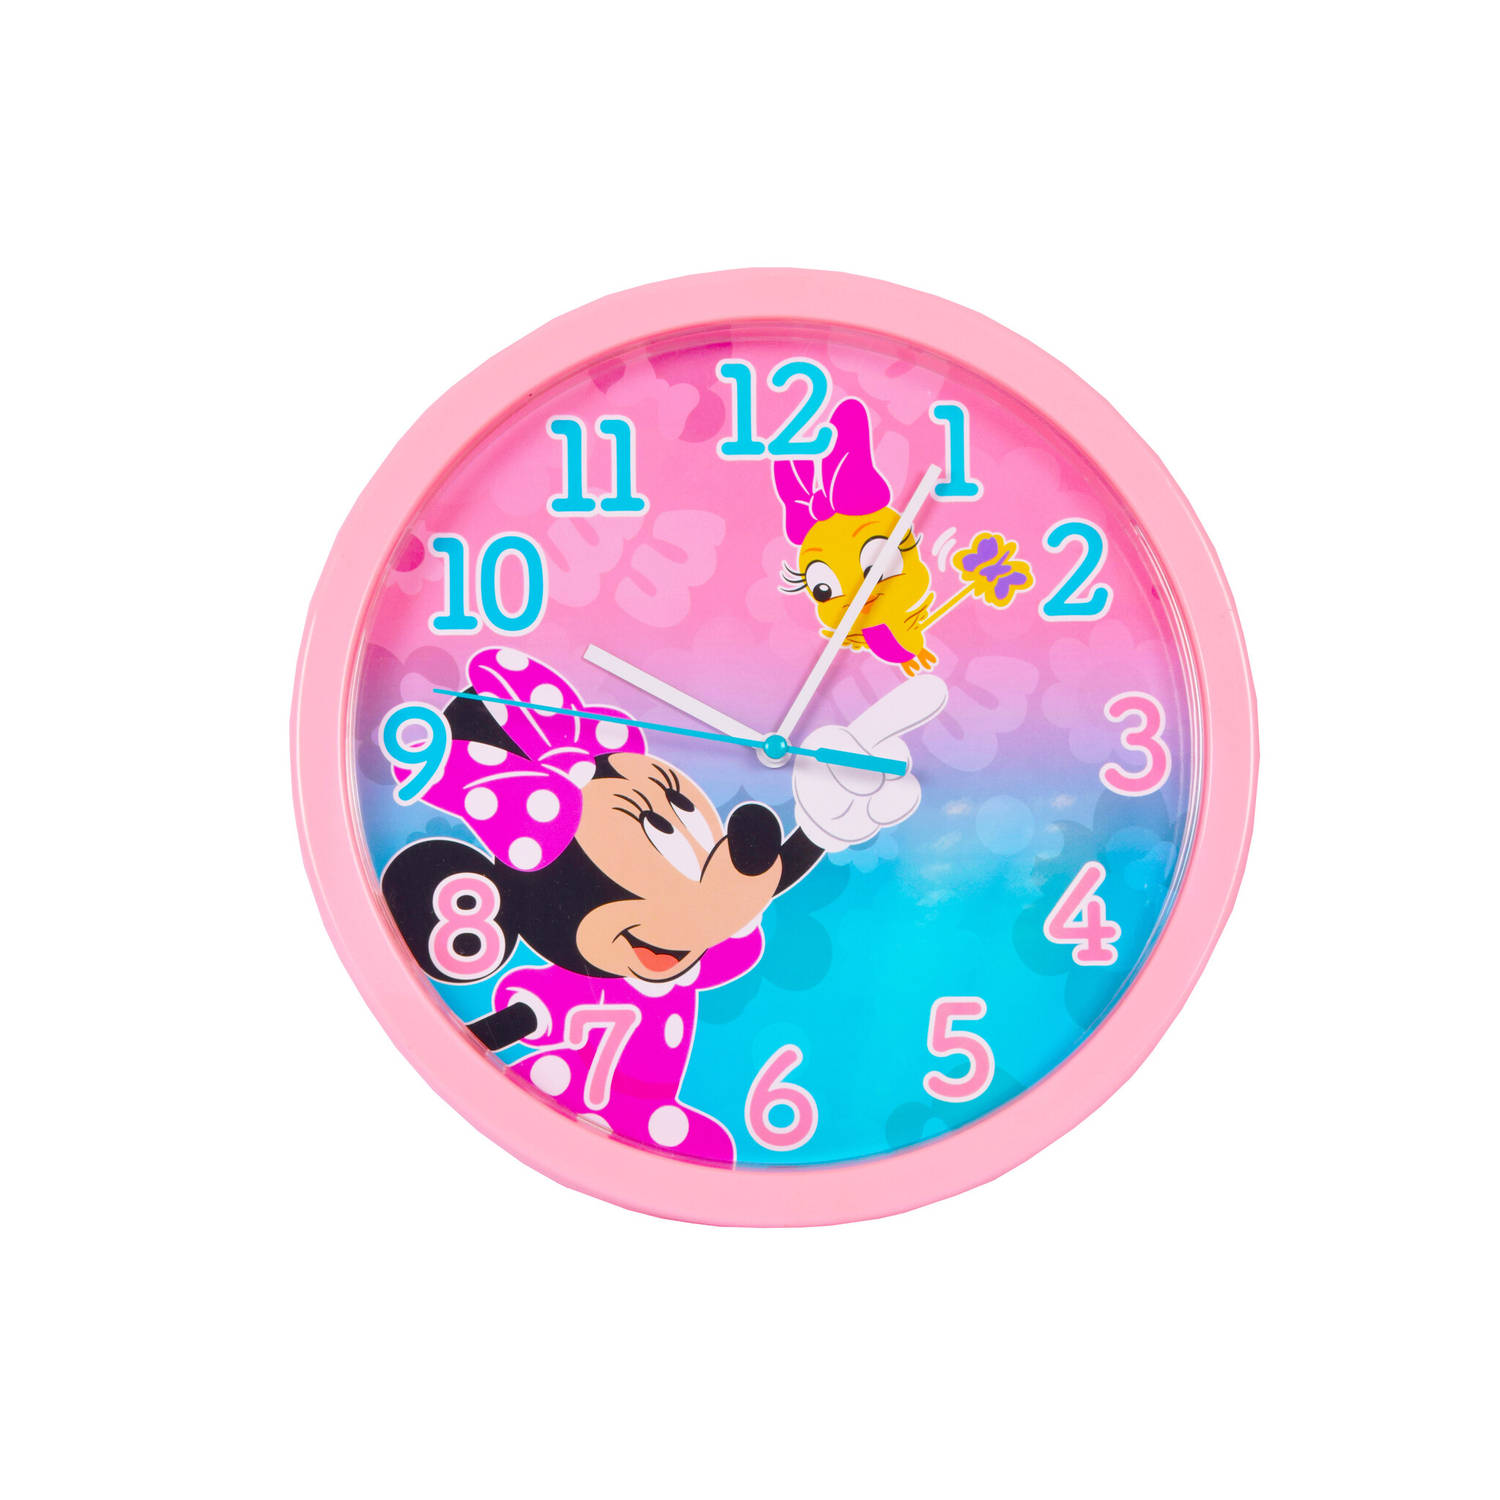 Wandklok 25 cm | Muurklok voor Kind van Minnie Mouse Design | Kinder Kamer Accessoires | Decoratie Accessoires Voor Meisjes’ Slaapkamer